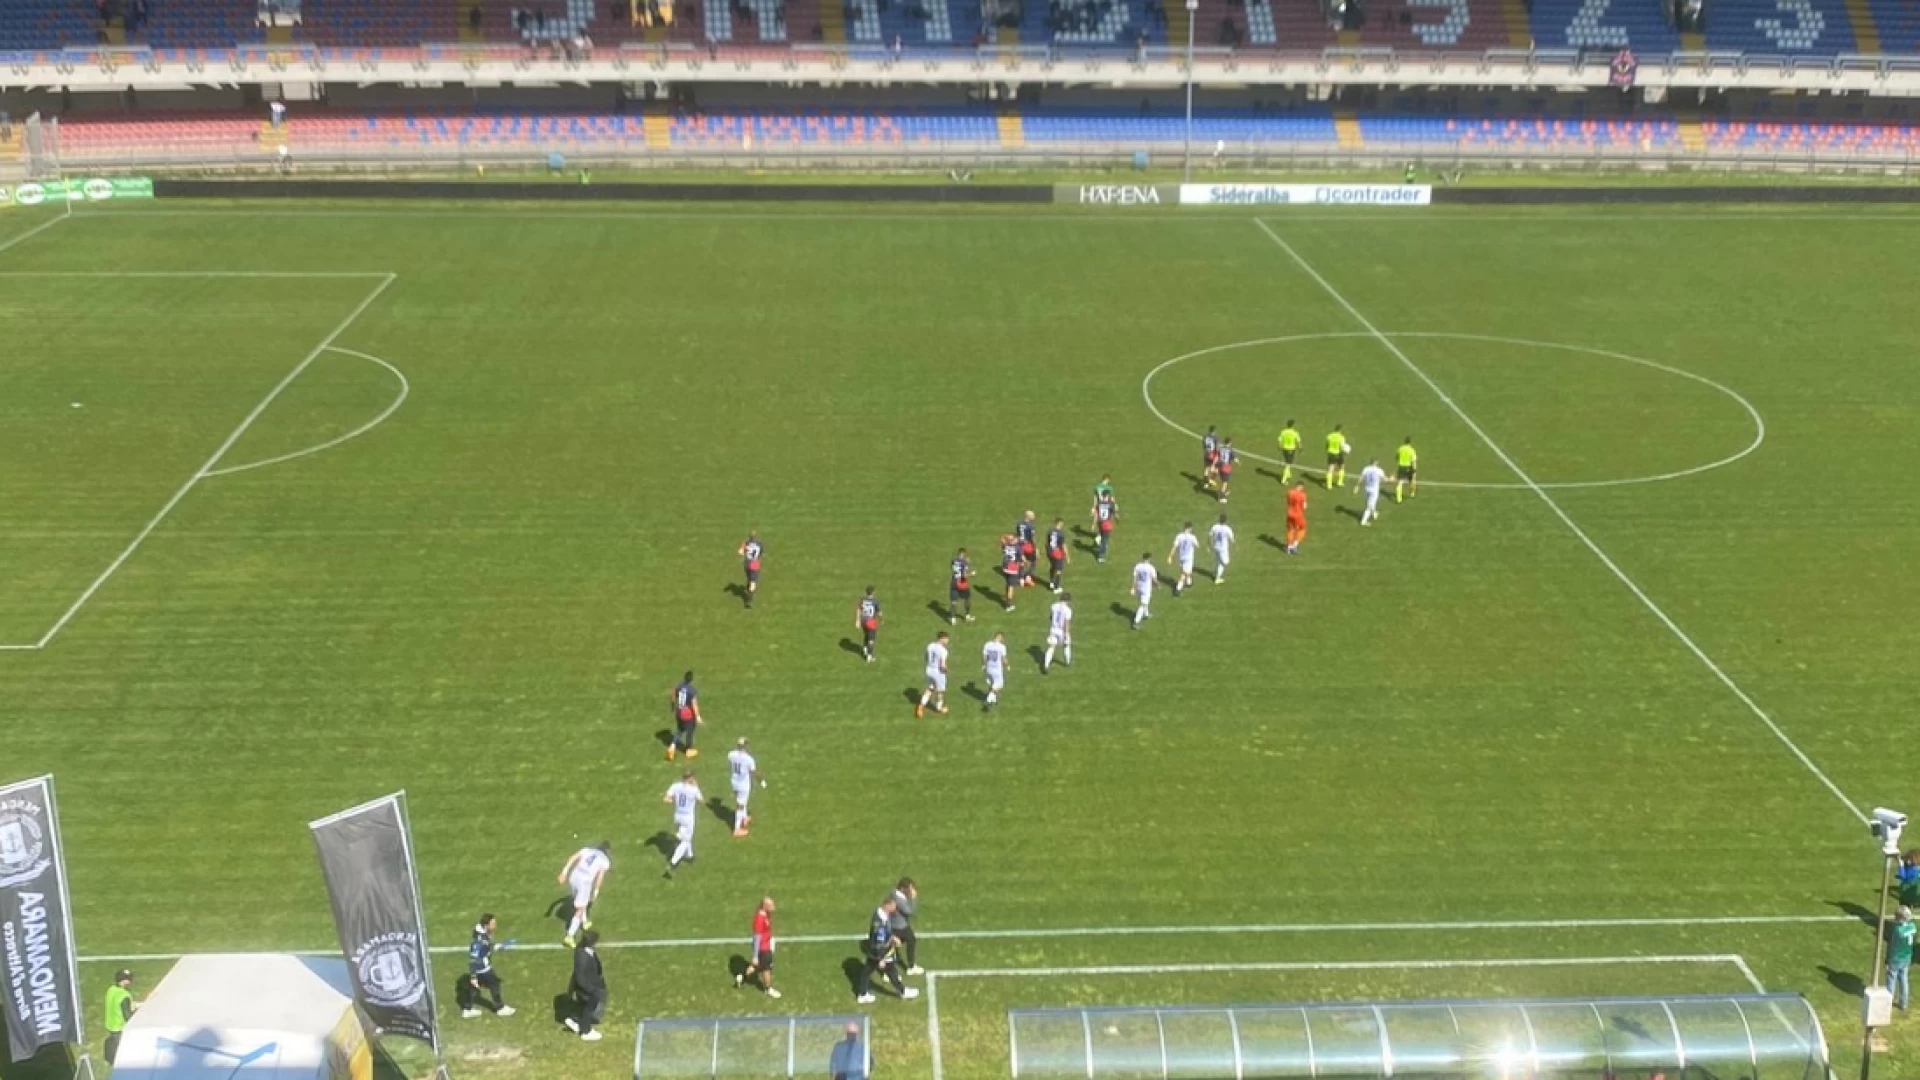 Serie D girone F: il Vastogirardi cede nel finale alla Sambenedettese. Tabellino e cronaca del match.